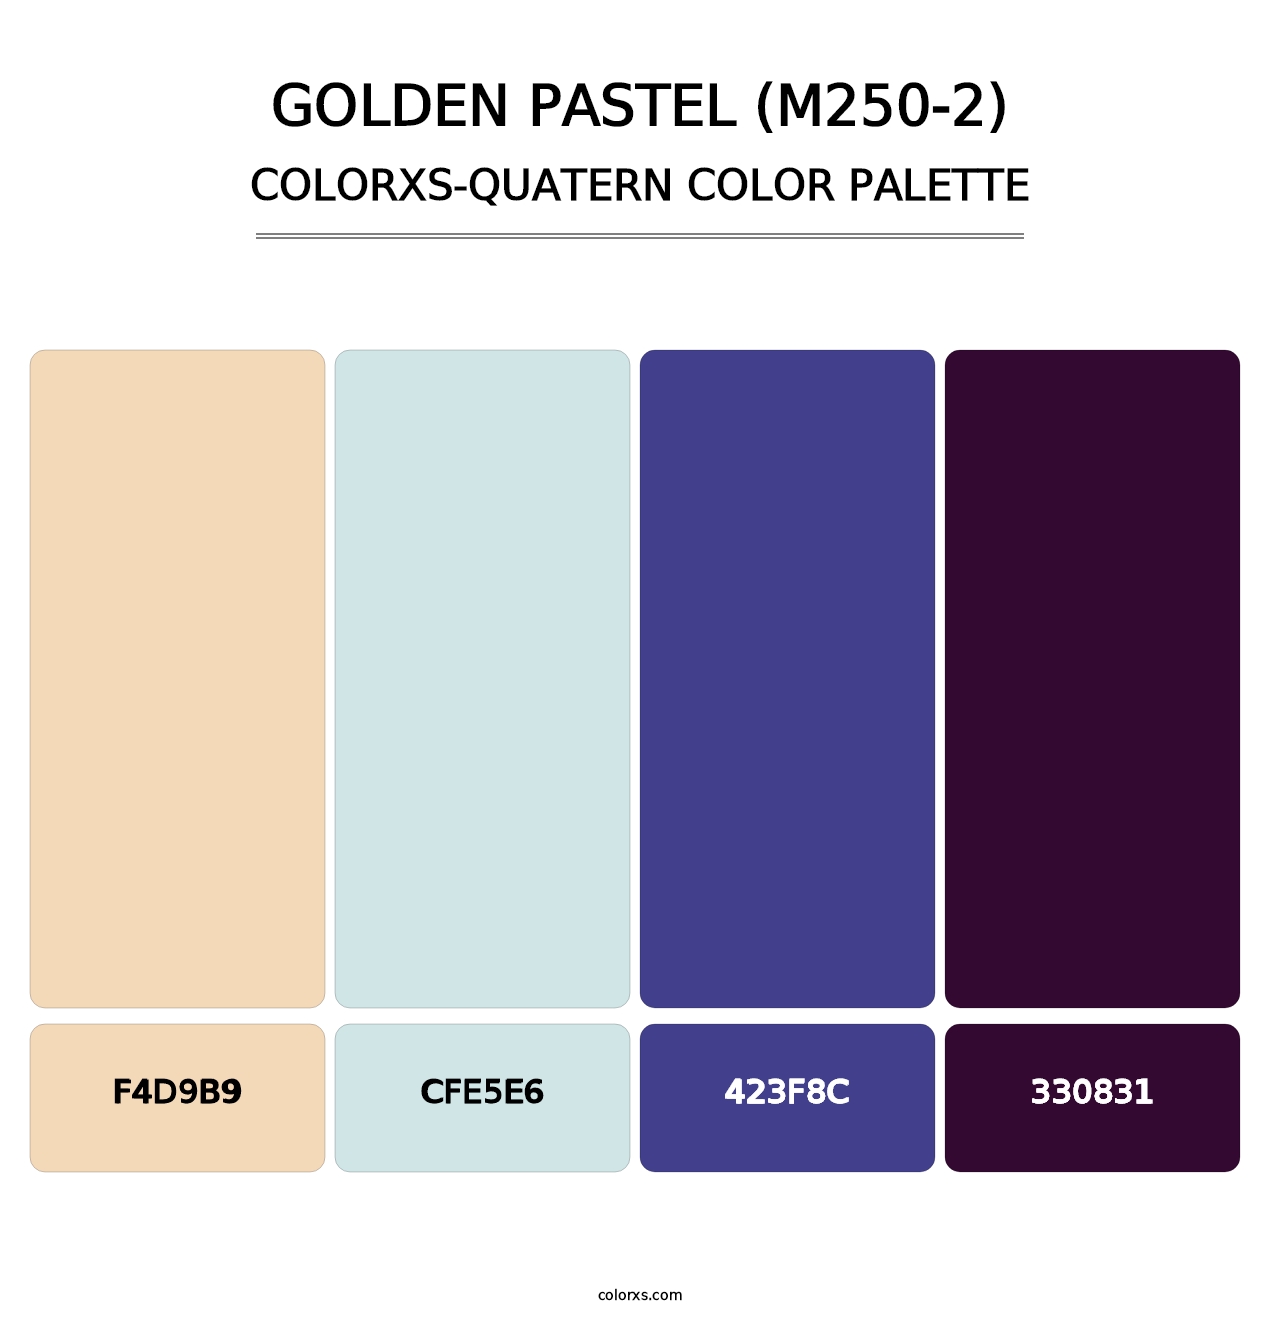 Golden Pastel (M250-2) - Colorxs Quatern Palette